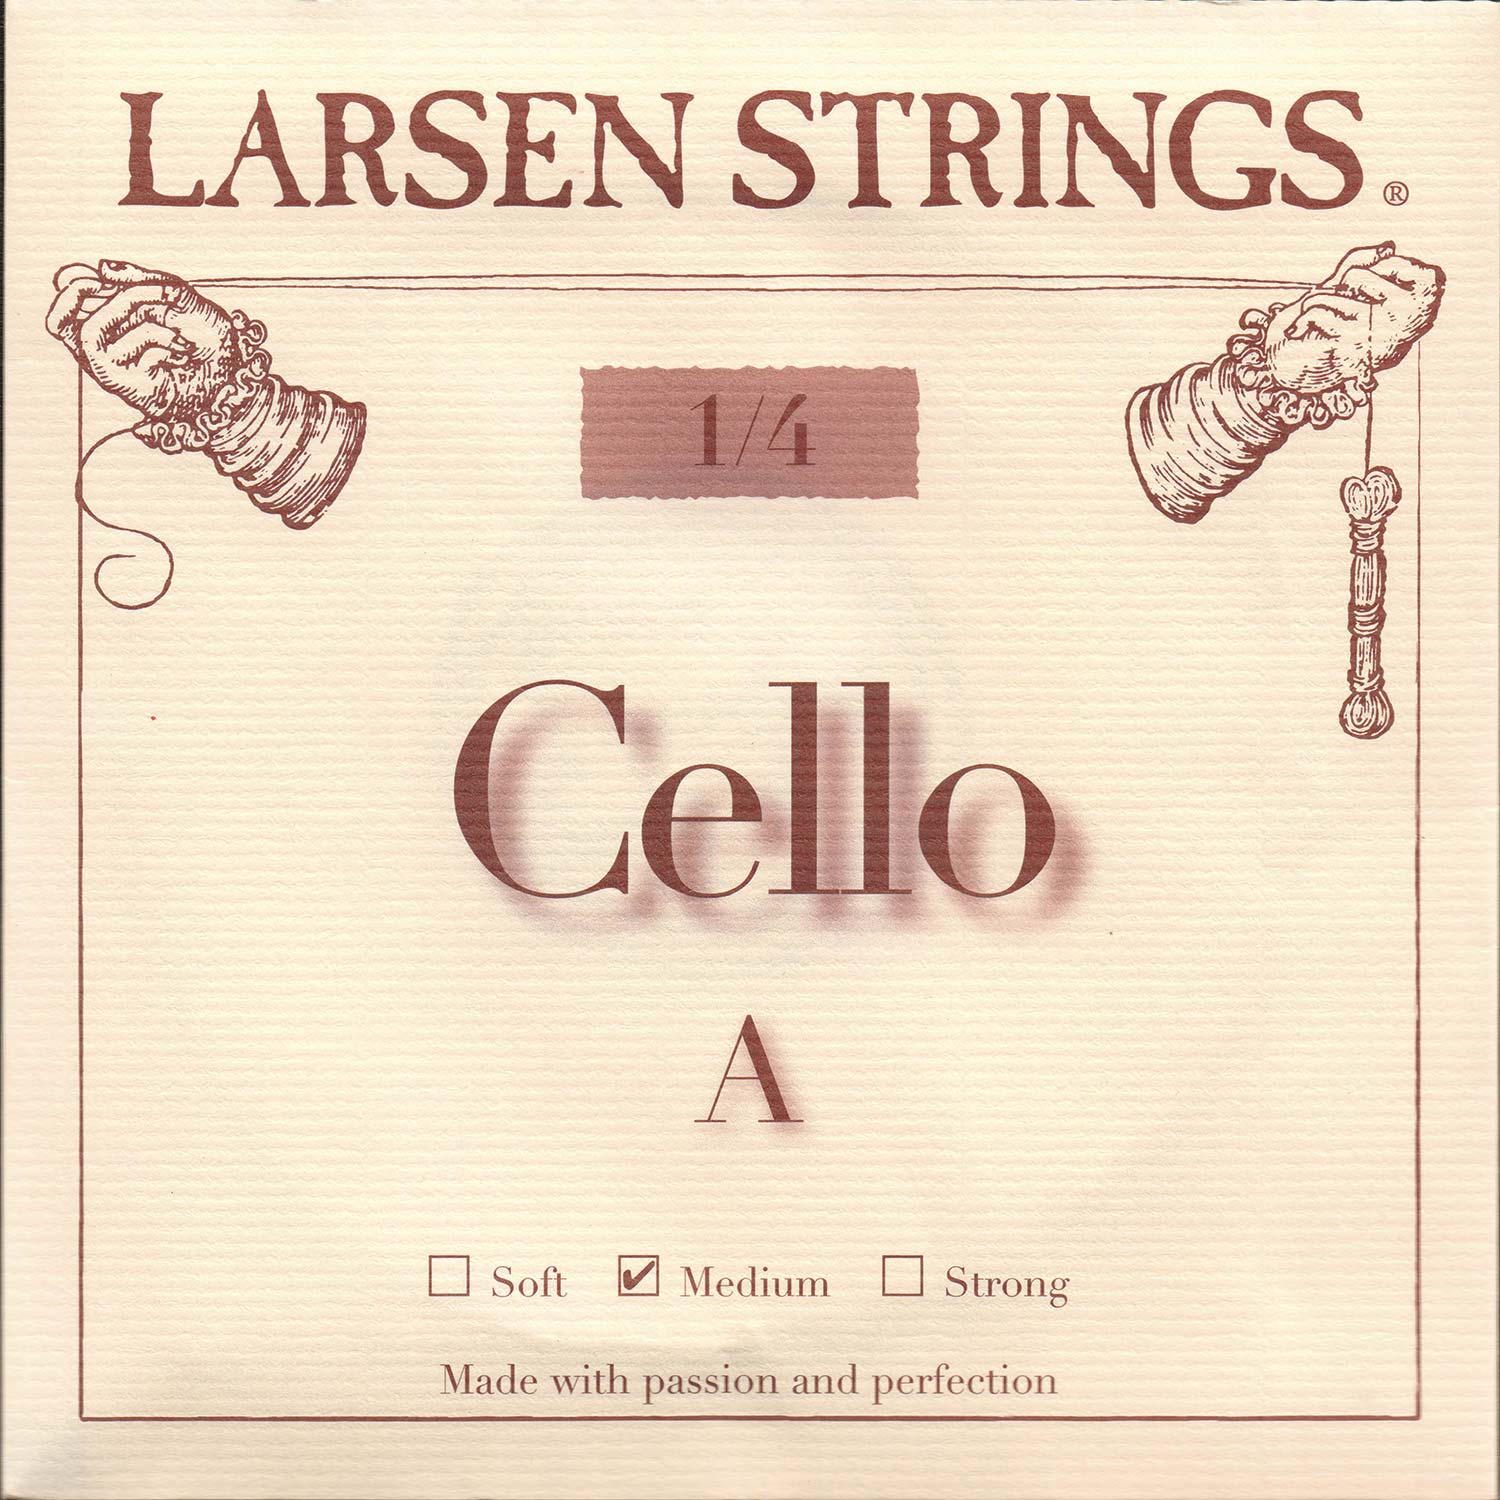 Larsen 1/4 Cello A String - alloy/steel: Medium | Johnson String Instrument